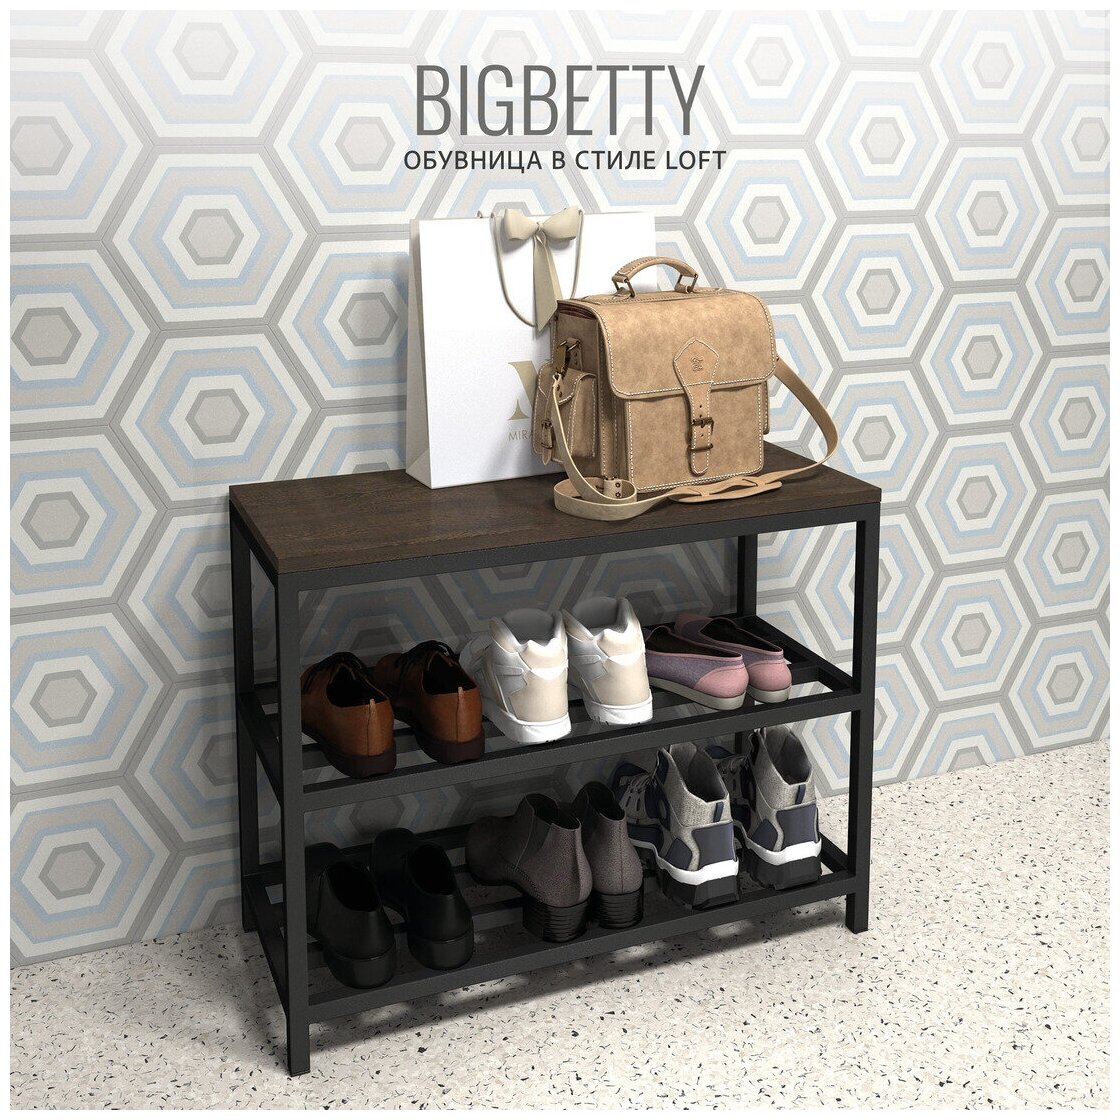 Обувница в прихожую BIGBETTY Loft, темно-коричневая, с сиденьем, 70х30х55см, Гростат